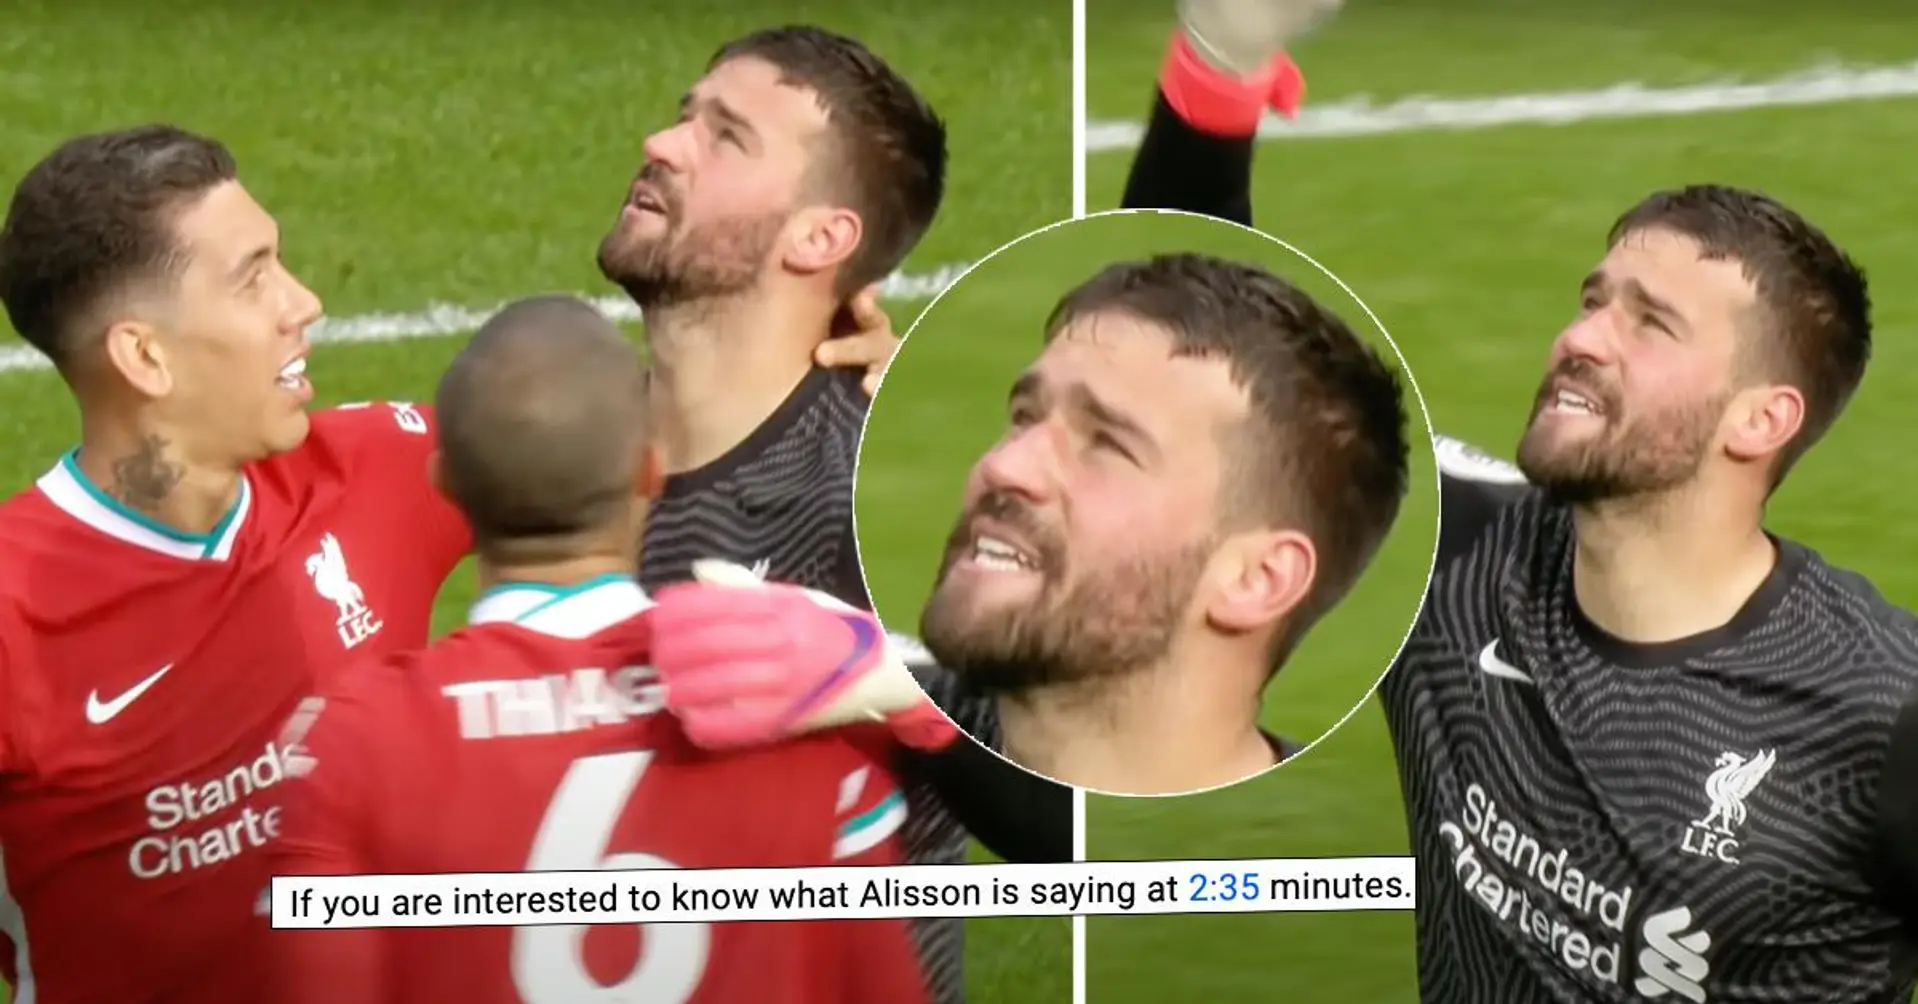 "Ich kann seine Lippen deutlich lesen": Brasilianischer Fan verrät, was genau Alisson nach seinem Tor für Liverpool sagte